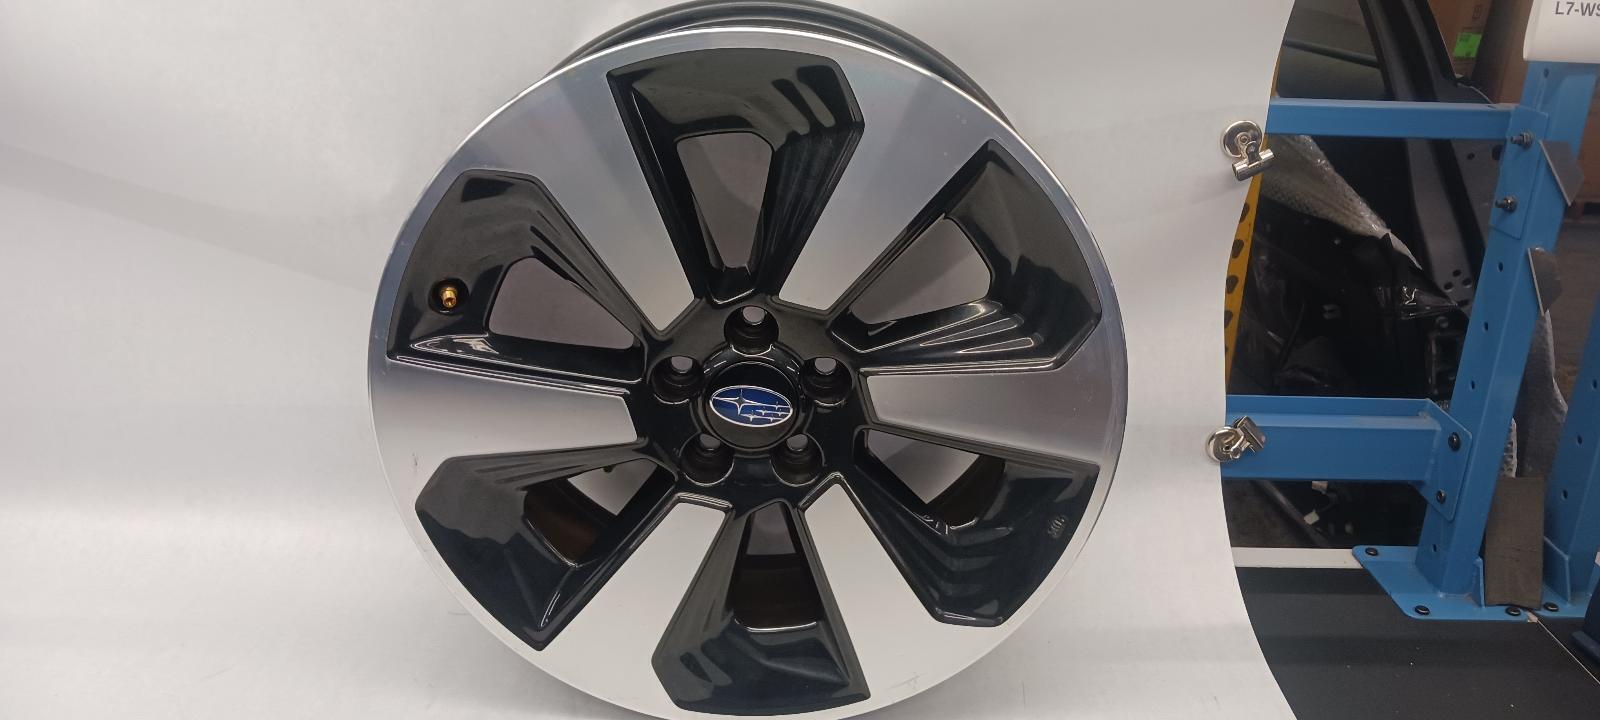 2017 SUBARU FORESTER Wheel 17x7 alloy 6 spoke OEM 17 18